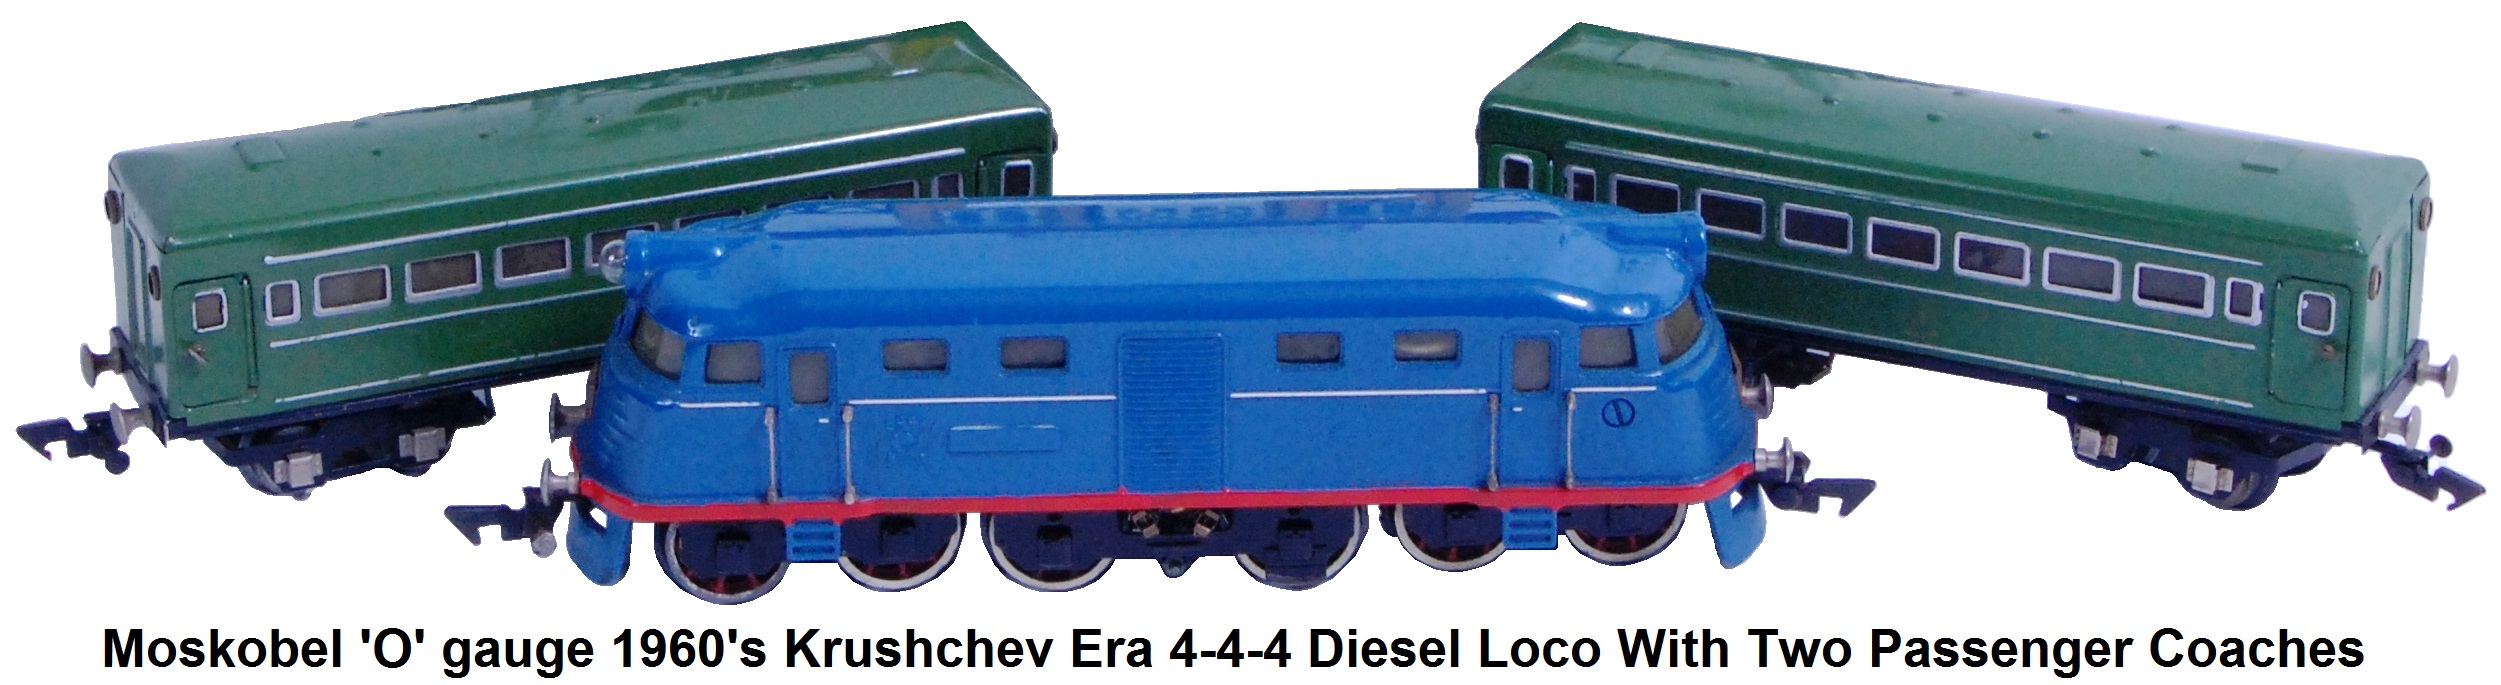 Moskobel Soviet Khrushchev Era 'O' gauge 4-4-4 Diesel Loco and 2 tin-plate passenger cars from the 1960's